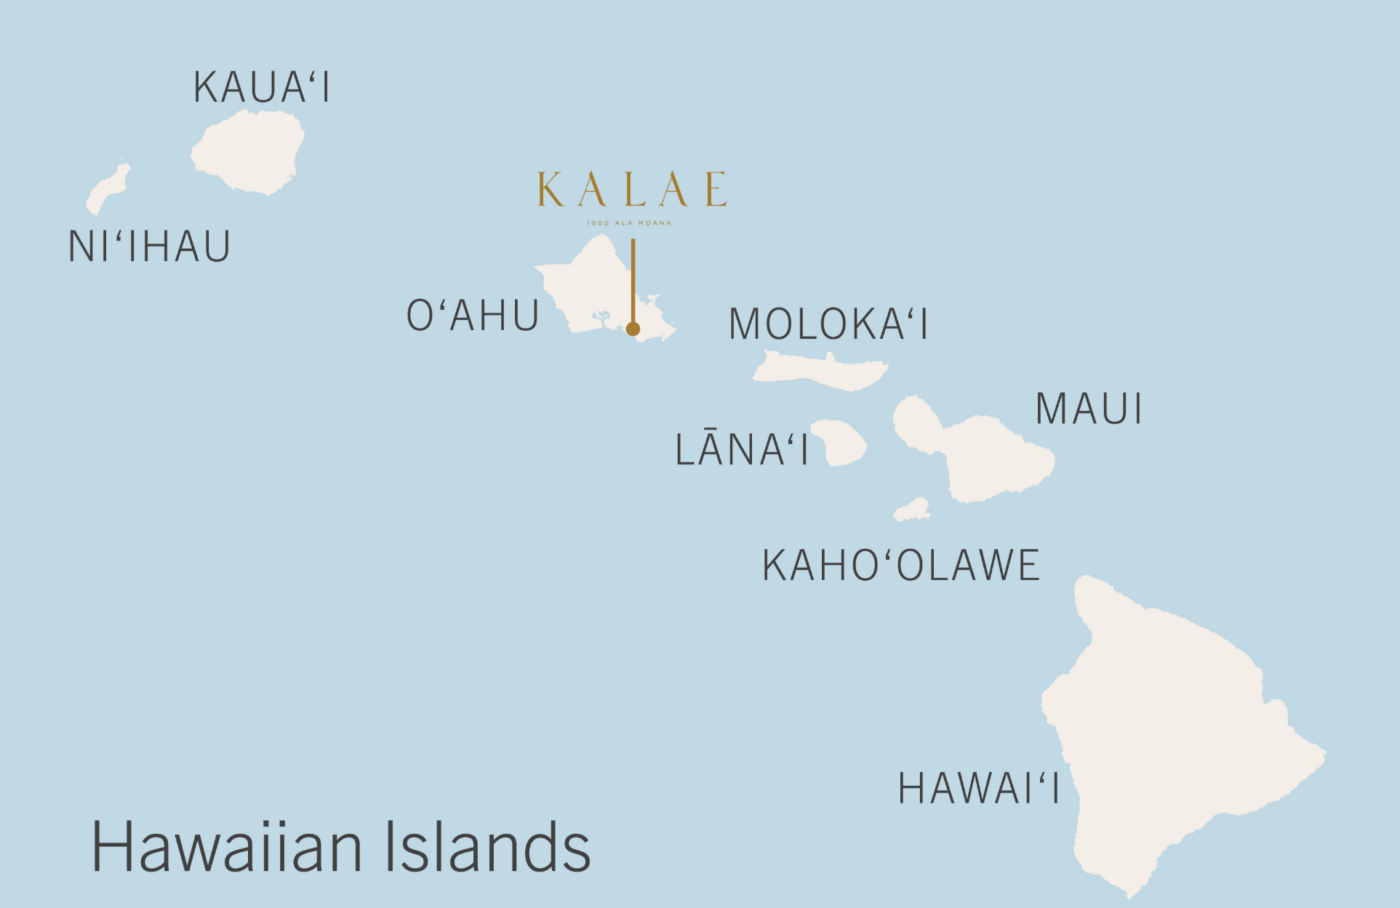 オアフ島でカラエを呼び出すハワイ地図。